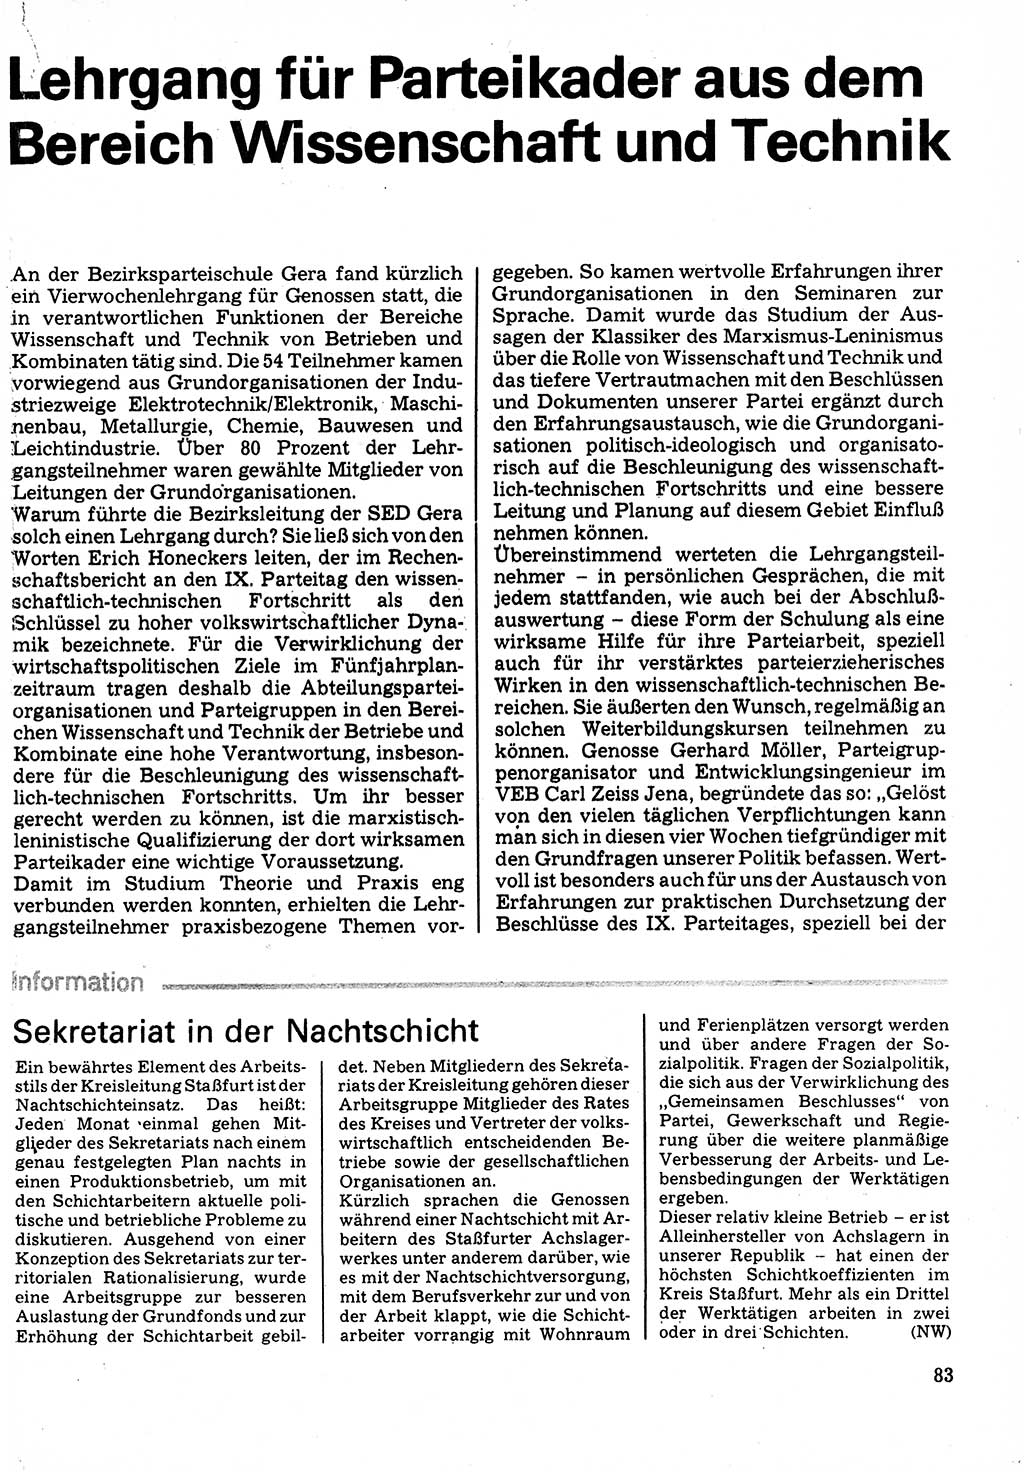 Neuer Weg (NW), Organ des Zentralkomitees (ZK) der SED (Sozialistische Einheitspartei Deutschlands) für Fragen des Parteilebens, 32. Jahrgang [Deutsche Demokratische Republik (DDR)] 1977, Seite 83 (NW ZK SED DDR 1977, S. 83)